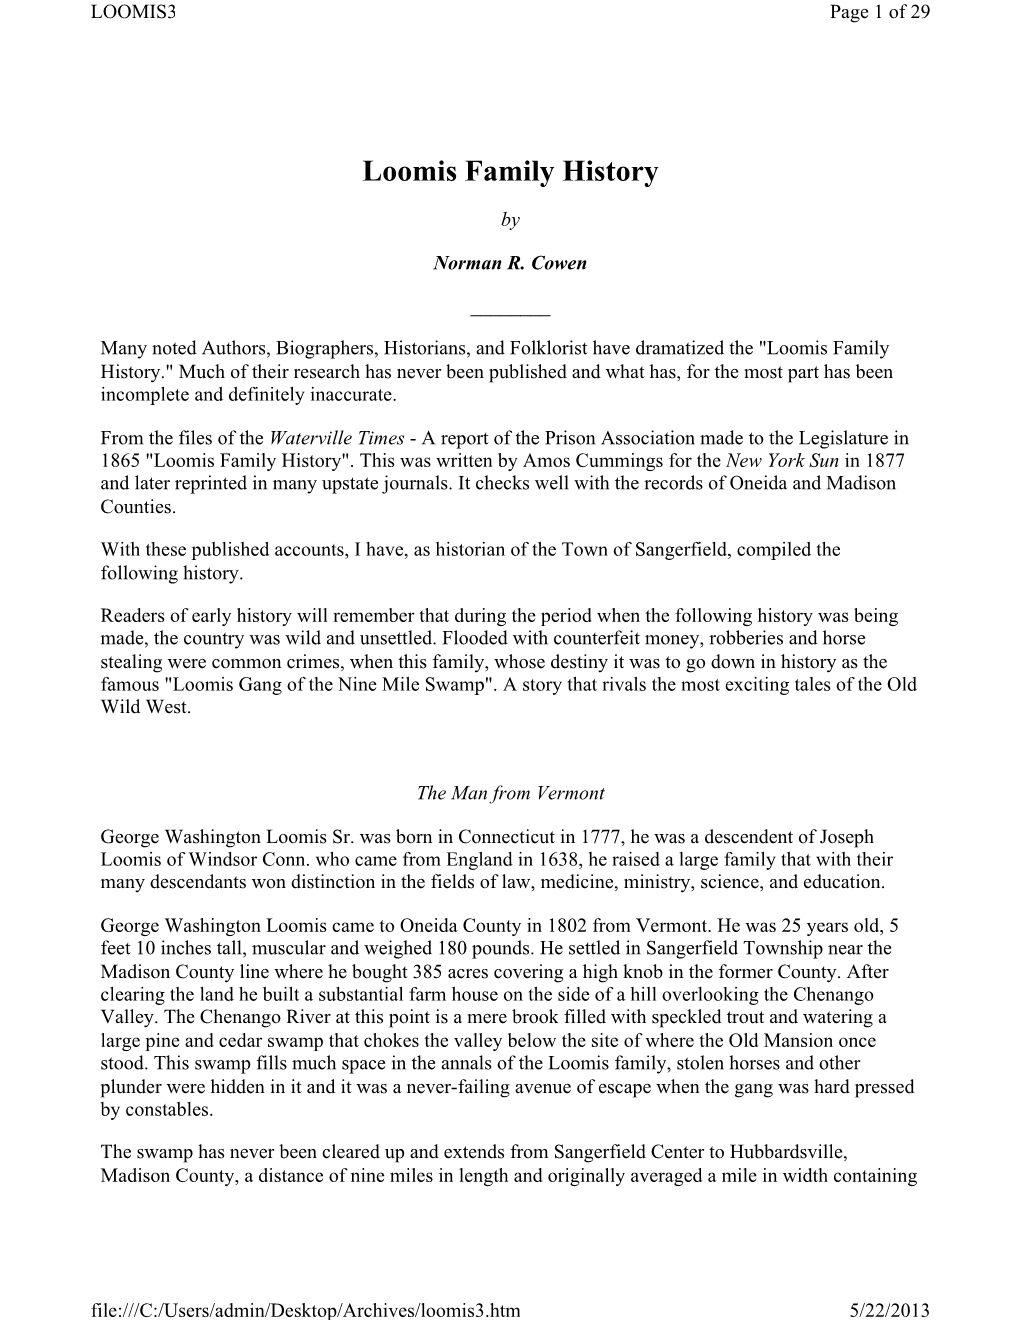 Loomis Family History